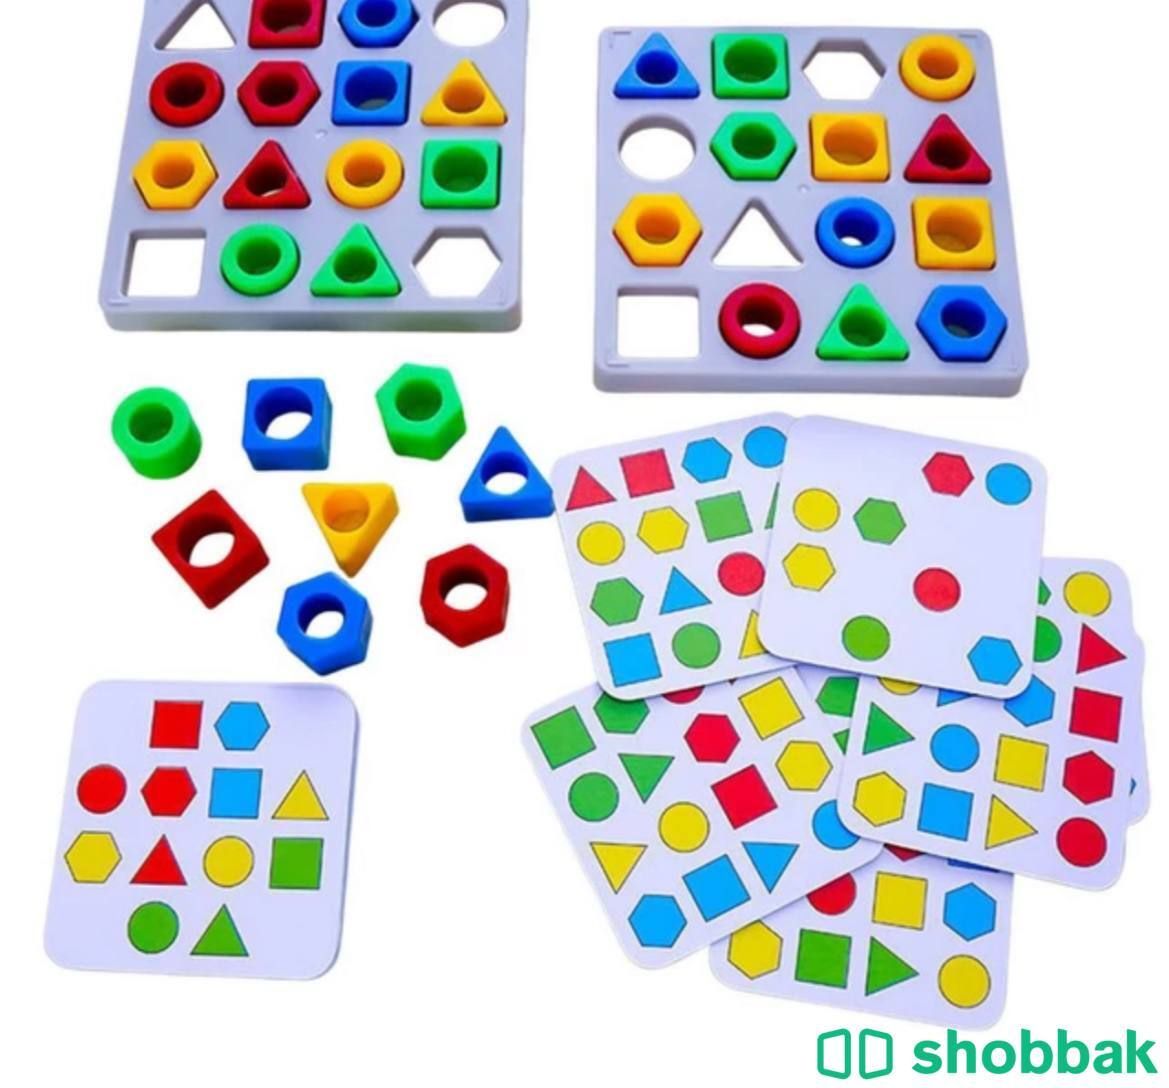 لعبة تطابق الشكل الهندسي - جماعية -تعلمية Shobbak Saudi Arabia